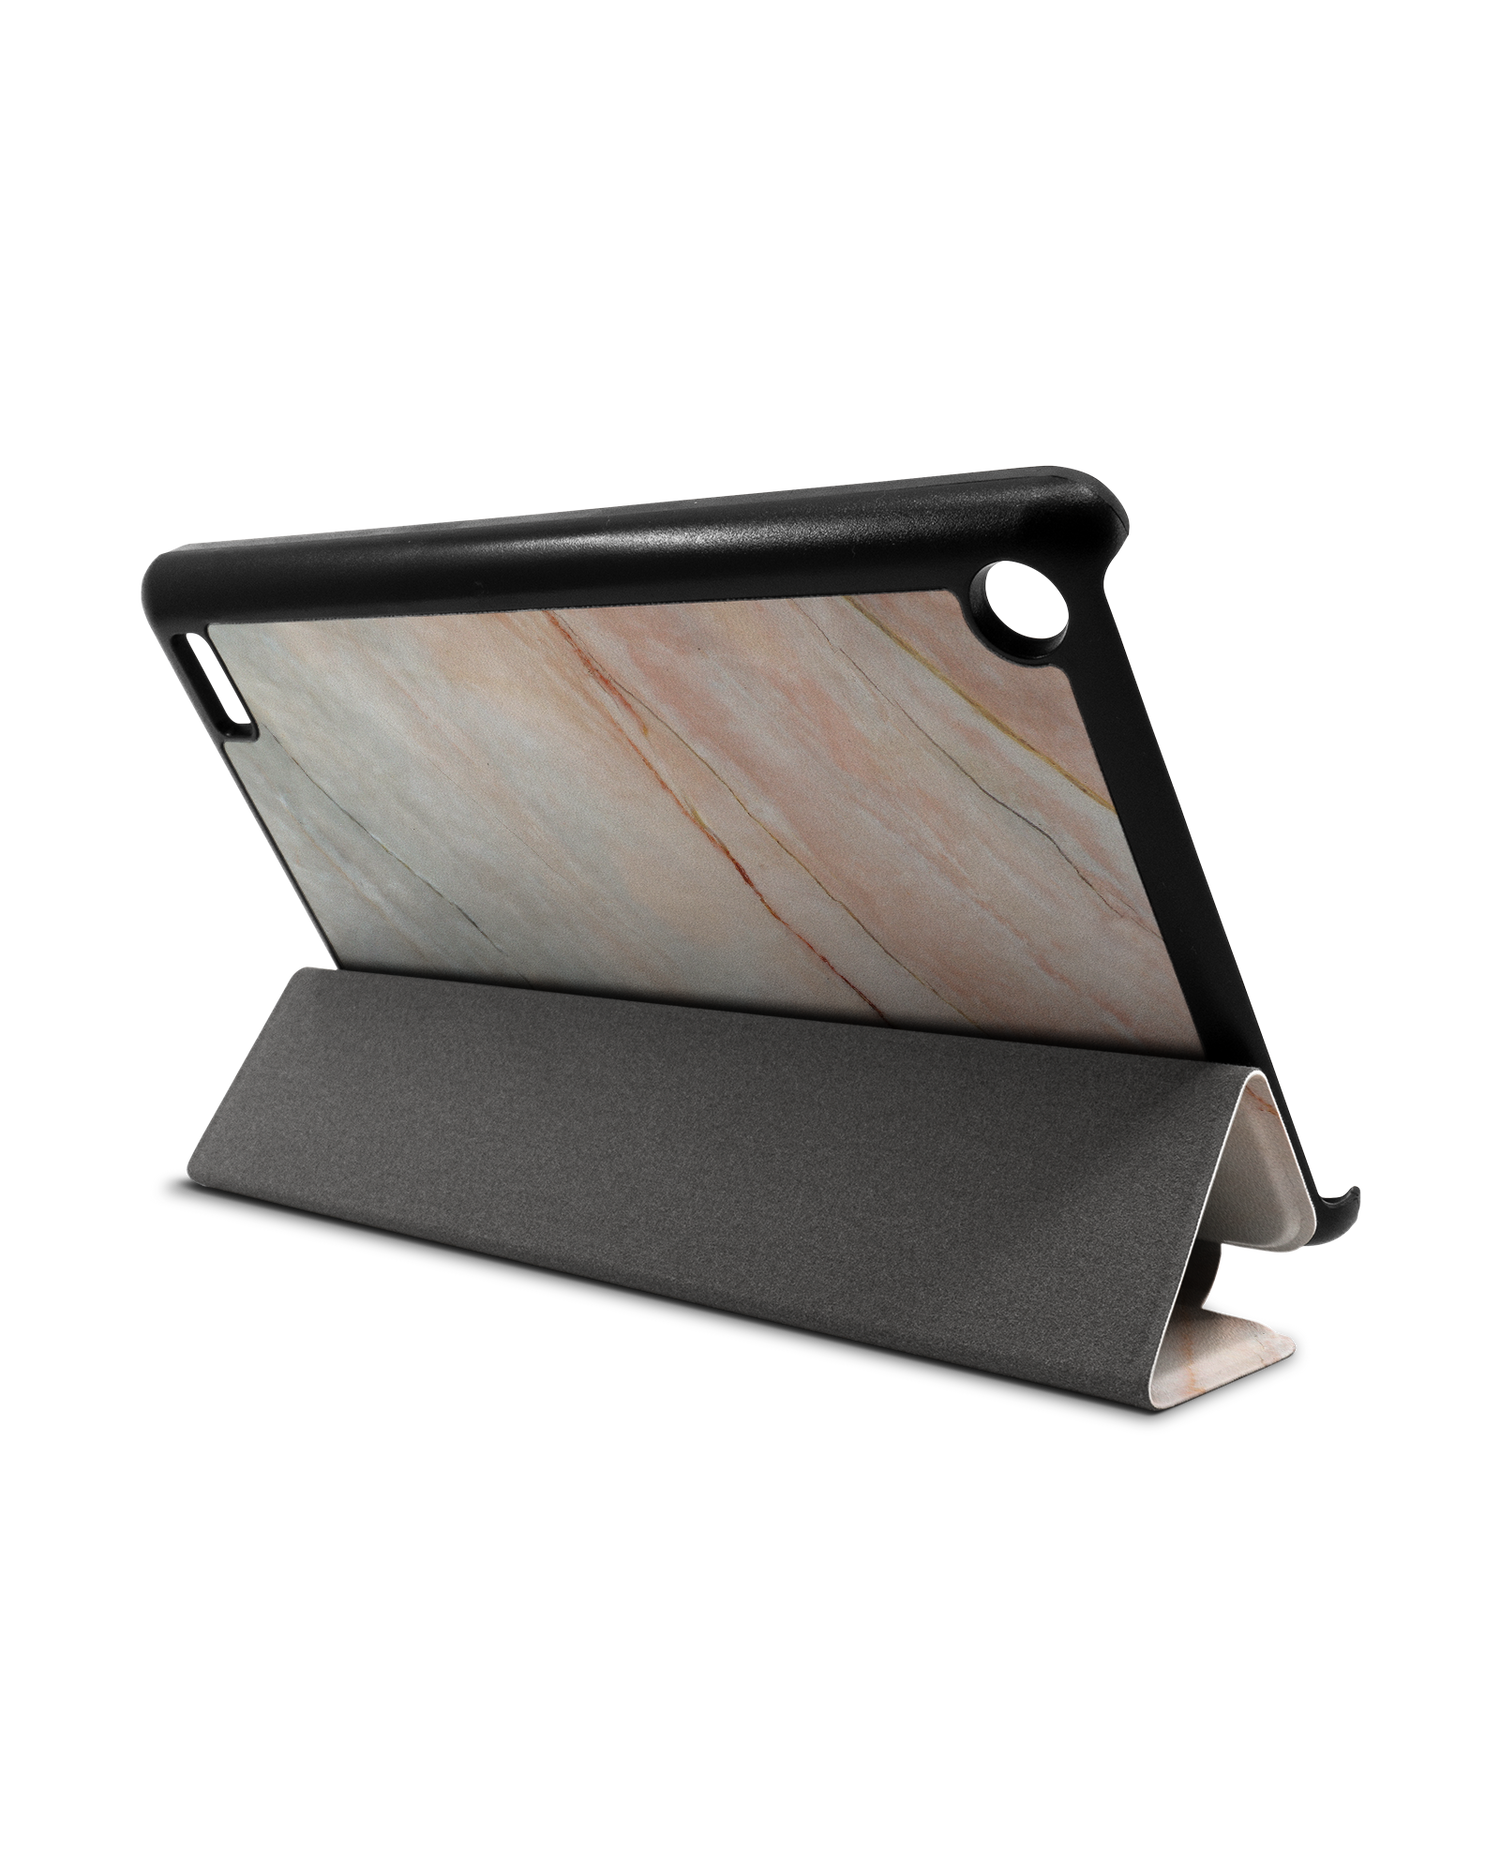 Mother of Pearl Marble Tablet Smart Case für Amazon Fire 7: Aufgestellt im Querformat